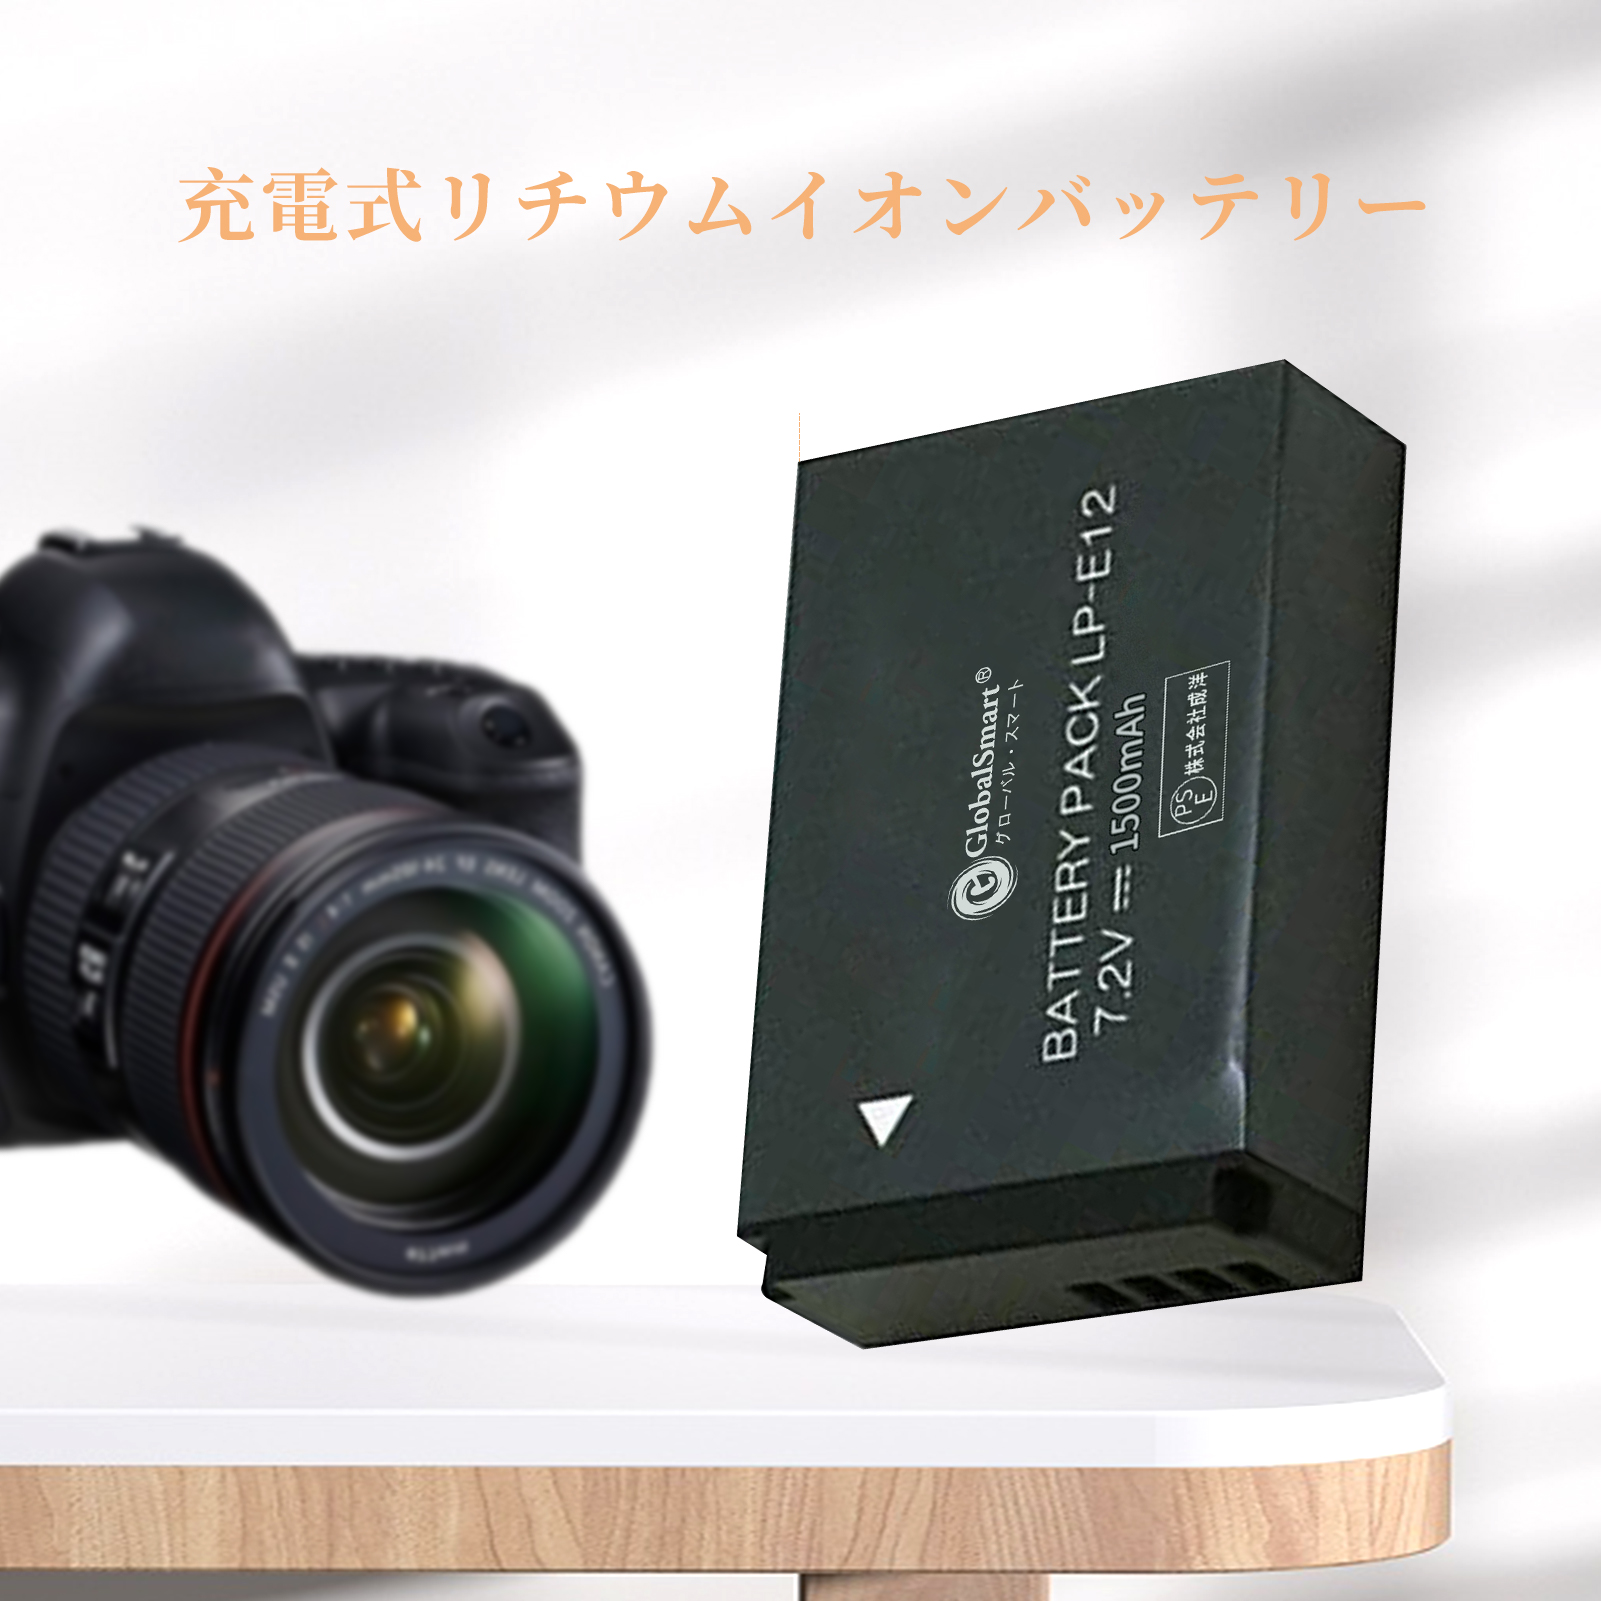  Canon キヤノン LP-E12  7.2V 1500mAh大容量 カメラ互換 バッテリー オリジナル充電器対応  互換対応機種カメラ 交換可能バッテリーバッテリー 充電池 高品質セル搭載